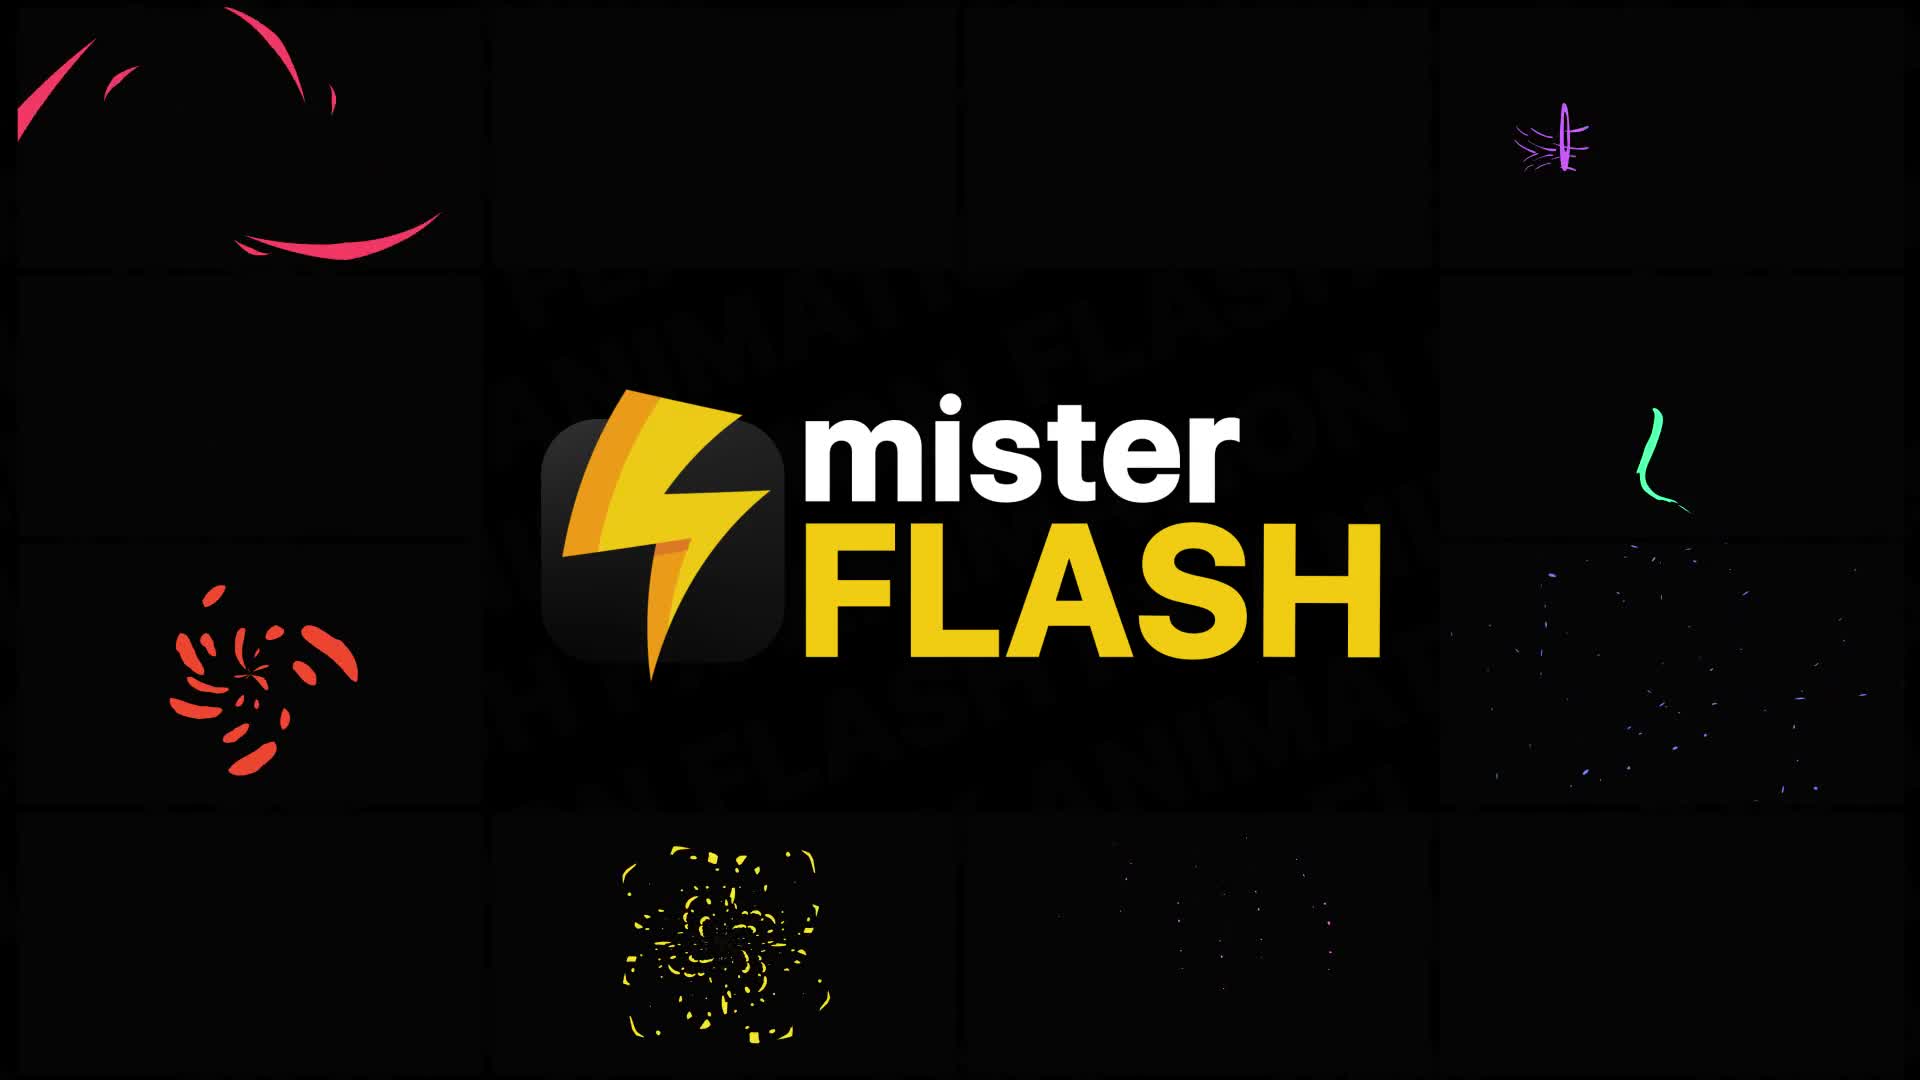 Flash FX Elements Pack 08 | Premiere Pro MOGRT Videohive 26745012 Premiere Pro Image 1